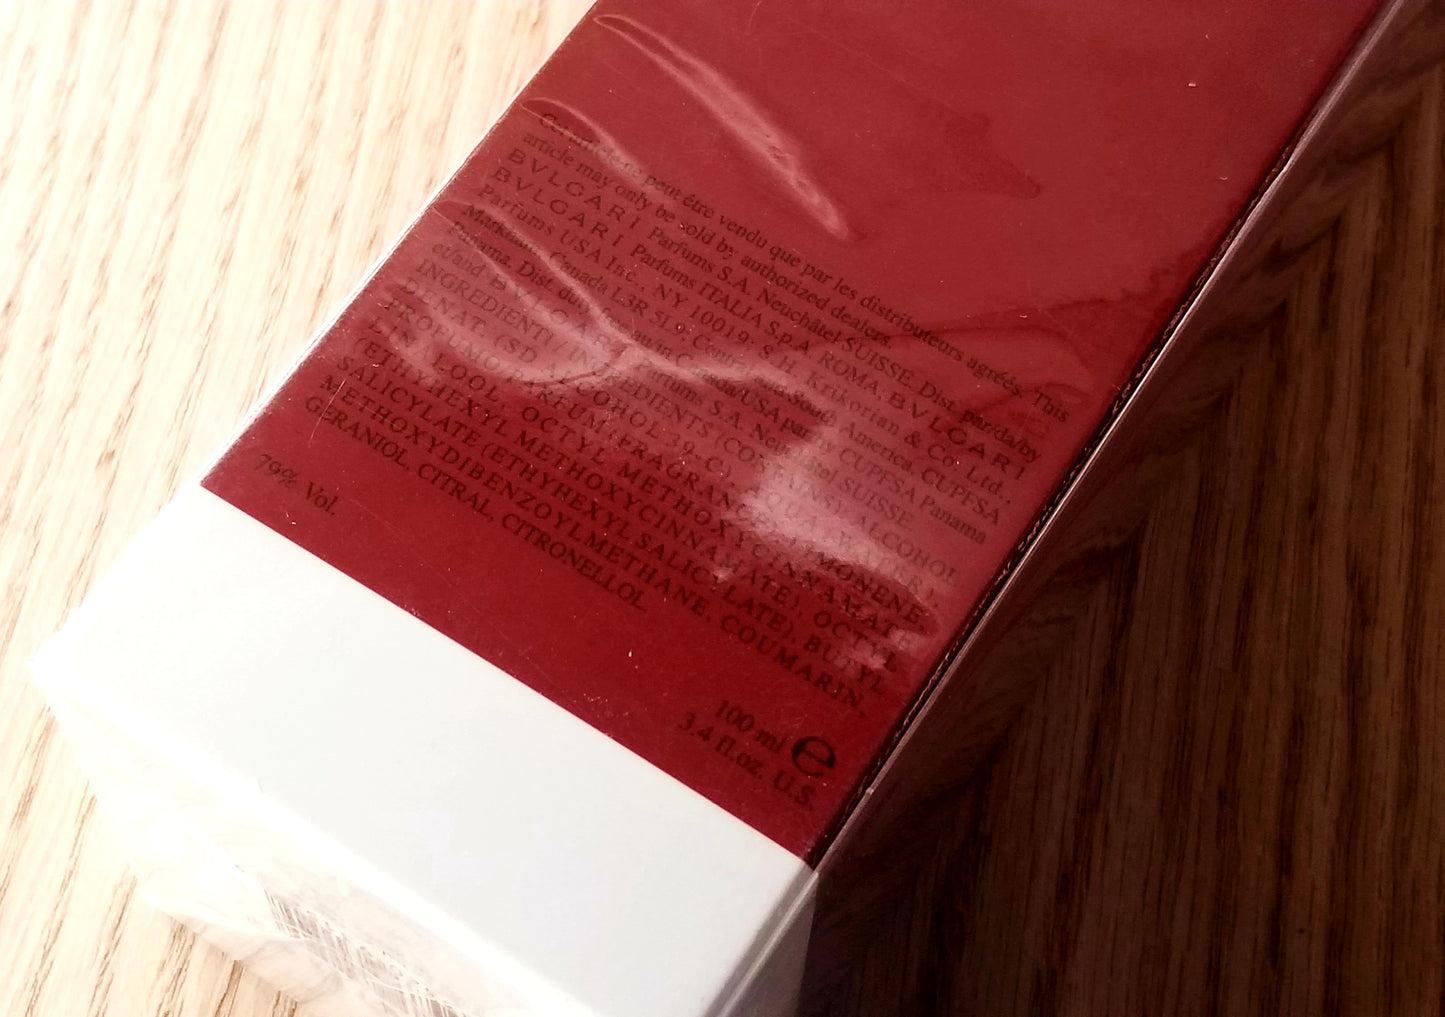 Bvlgari Eau Parfumee Au The Rouge EDC spray unisex 100 ml 3.4 OR 50 ml 1.7 oz, Vintage, Rare, Sealed